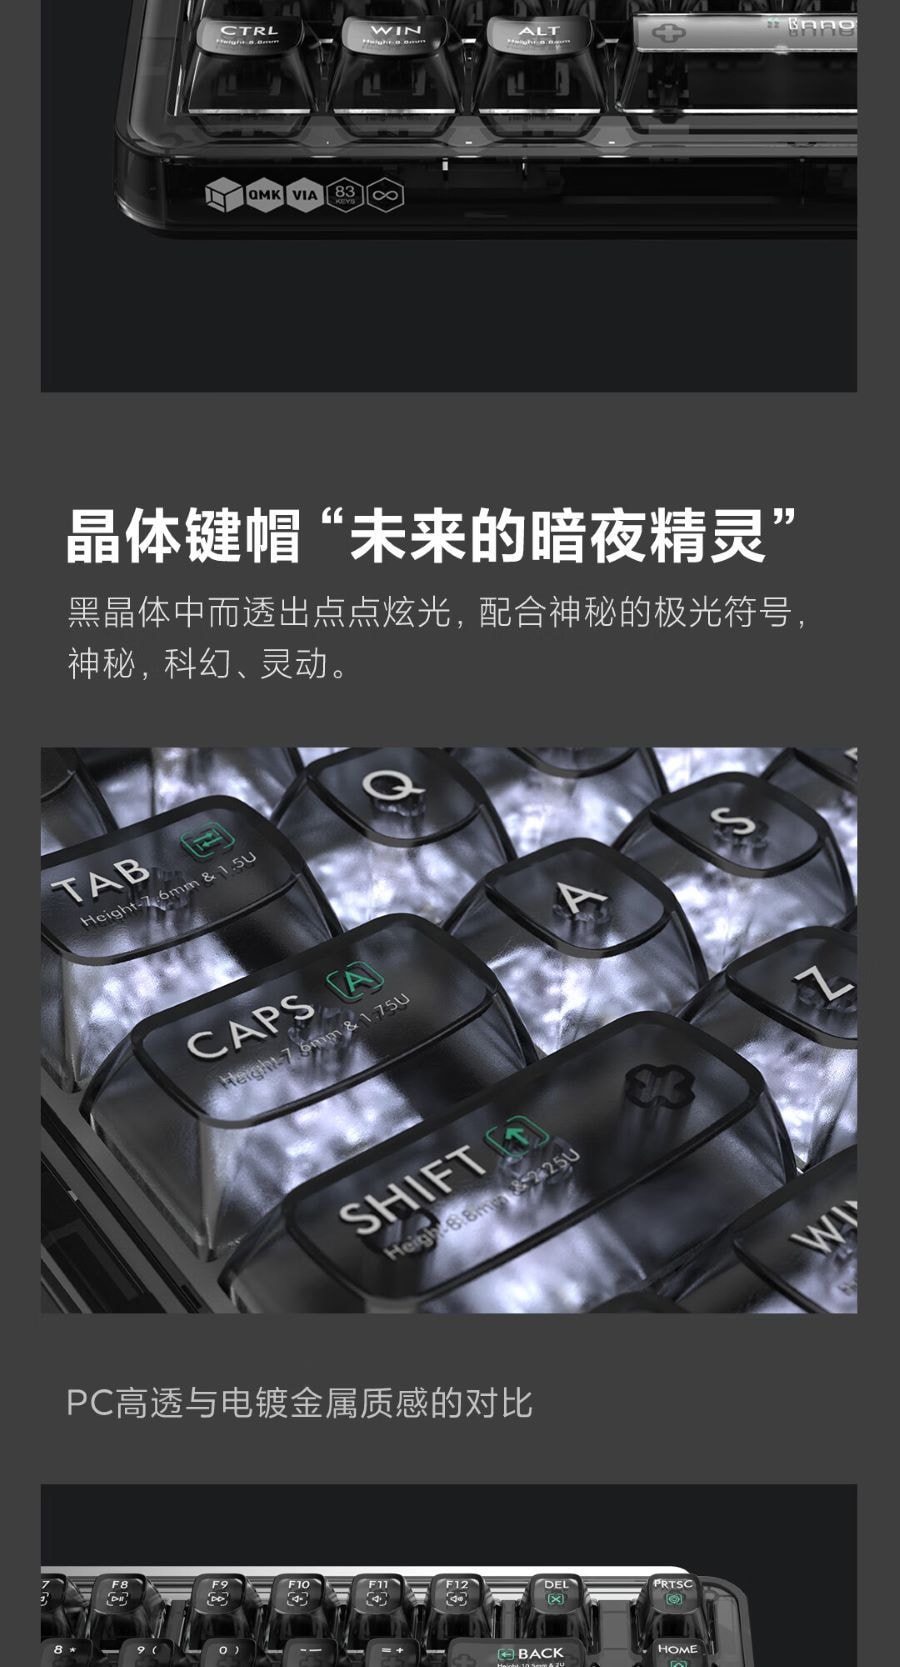 小米生態鏈 MIIIW米物 BlackIO客製機械鍵盤 暗銀